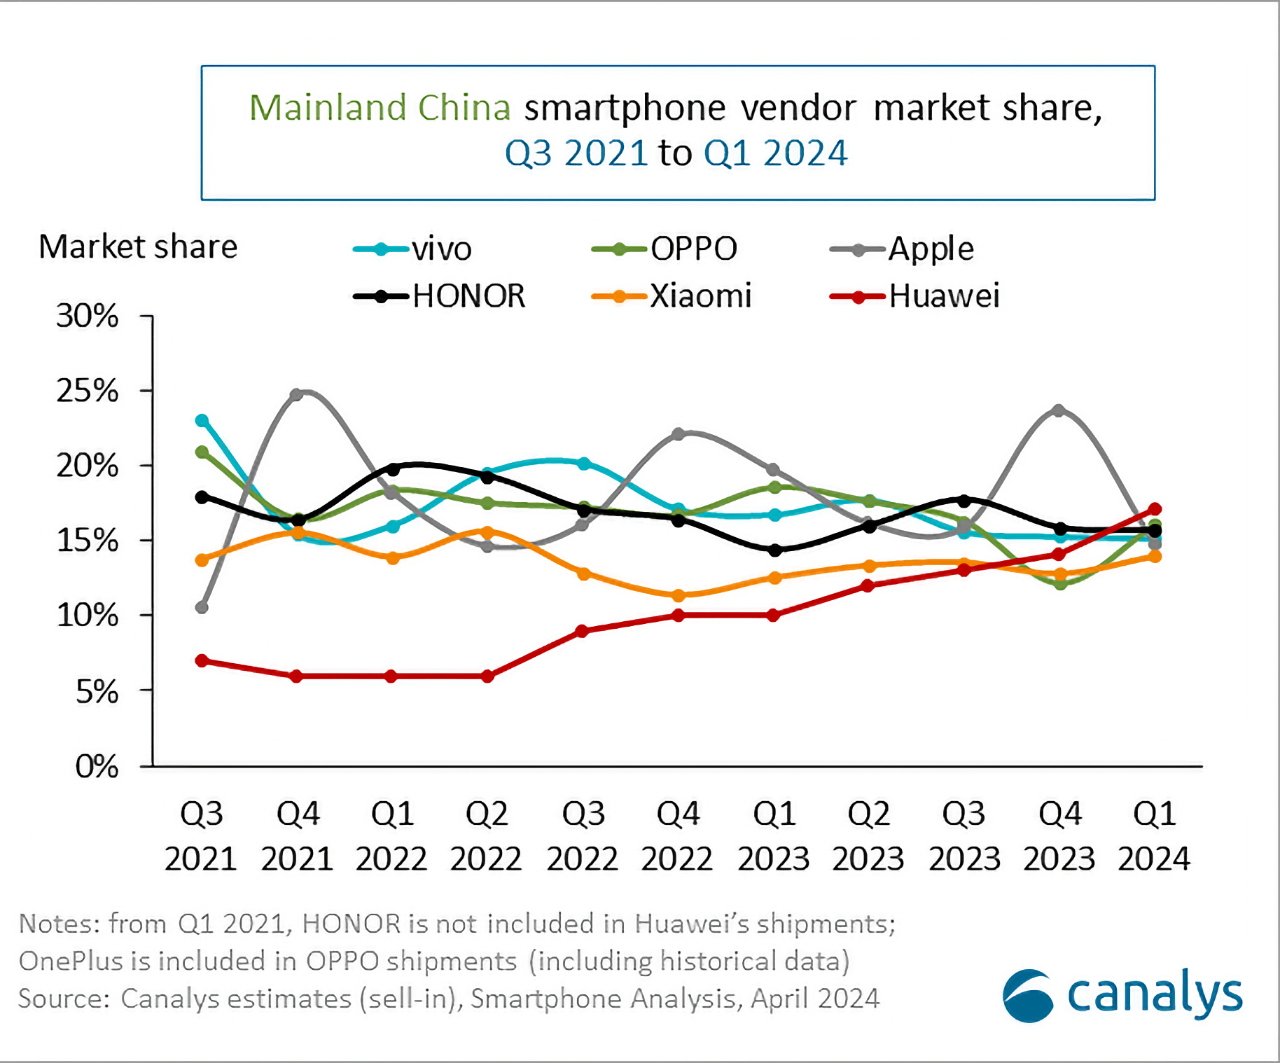 Линейный график, показывающий долю рынка производителей смартфонов в материковом Китае с третьего квартала 2021 года по первый квартал 2024 года с линиями тренда для Vivo, OPPO, HONOR, Xiaomi, Apple и Huawei.